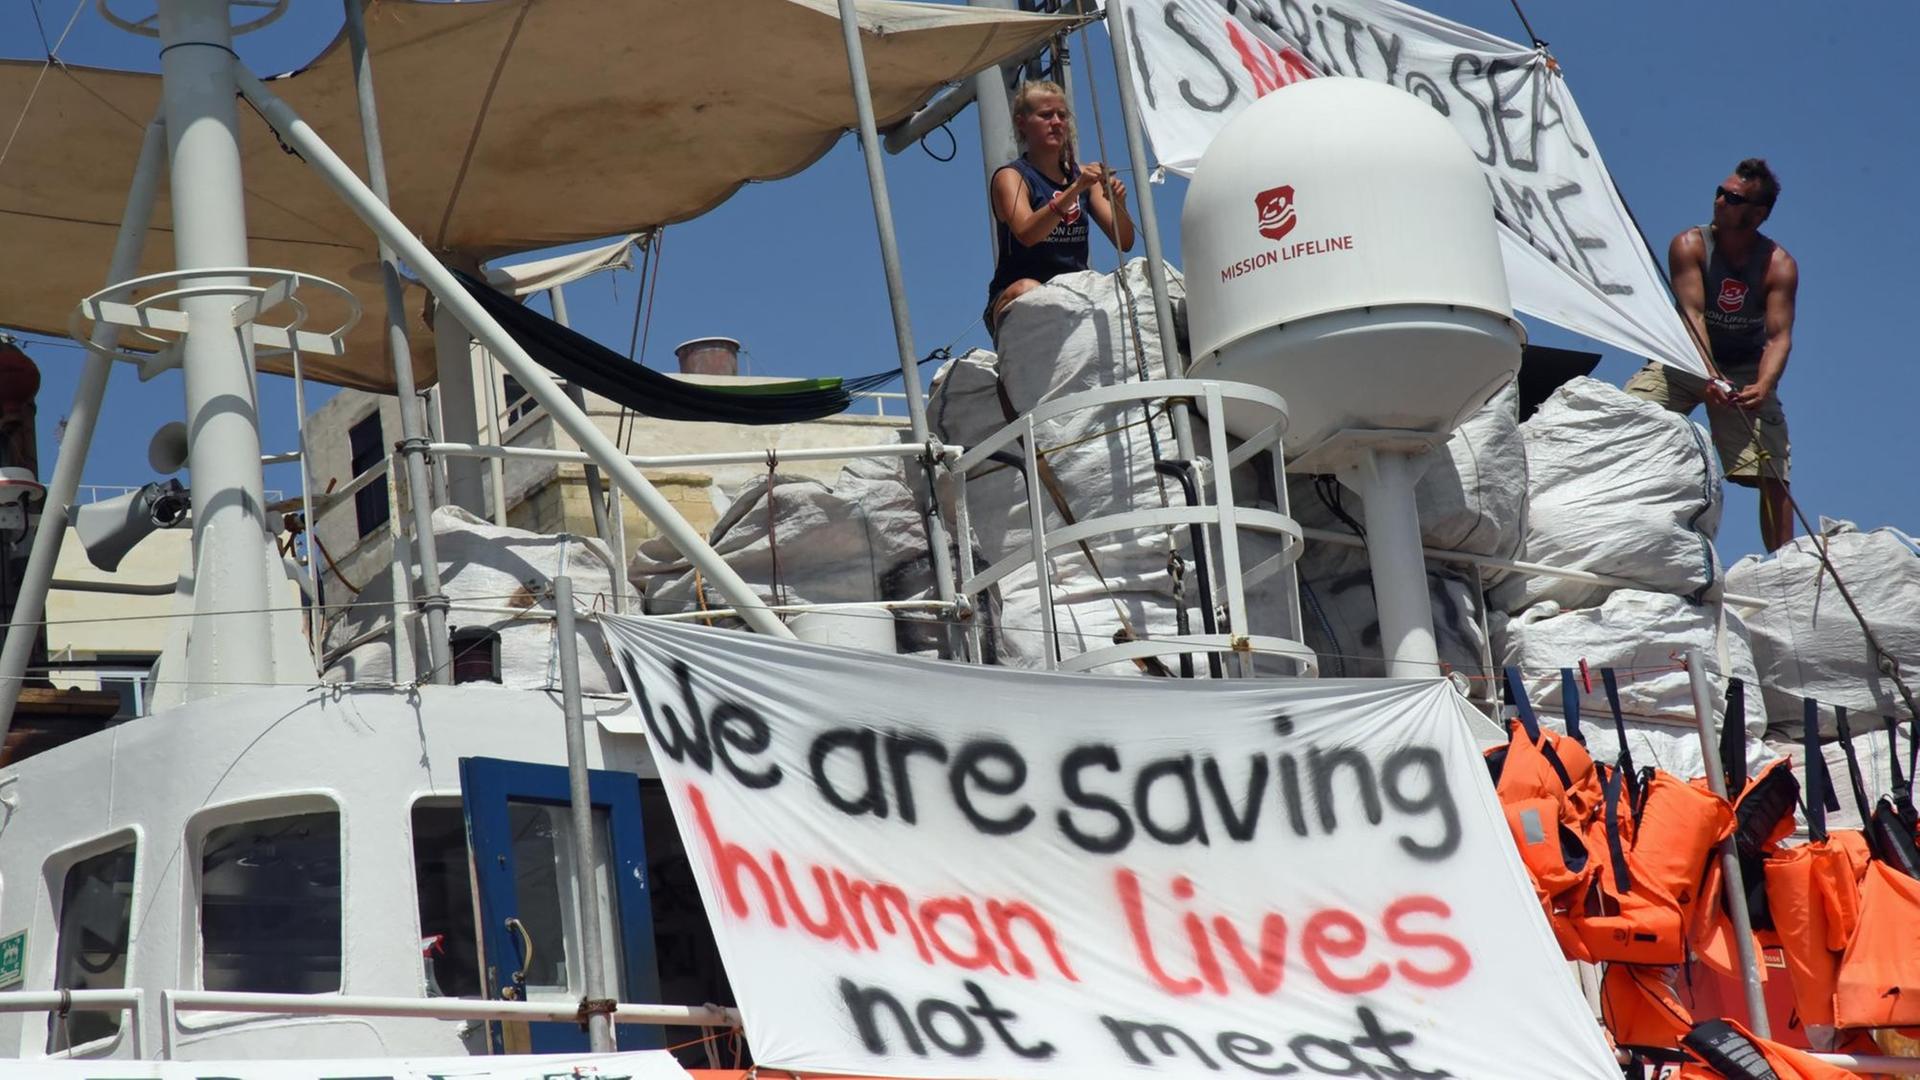 Das deutsche Seenotrettungsschiff "Lifeline" liegt im Hafen von Malta, wo es seit Ende Juni festgehalten wird. An Bord hat die Besatzung Transparente angabracht, auf denen steht "We are saving human lives not meeast" (Wir retten Menschenleben, kein Fleisch)